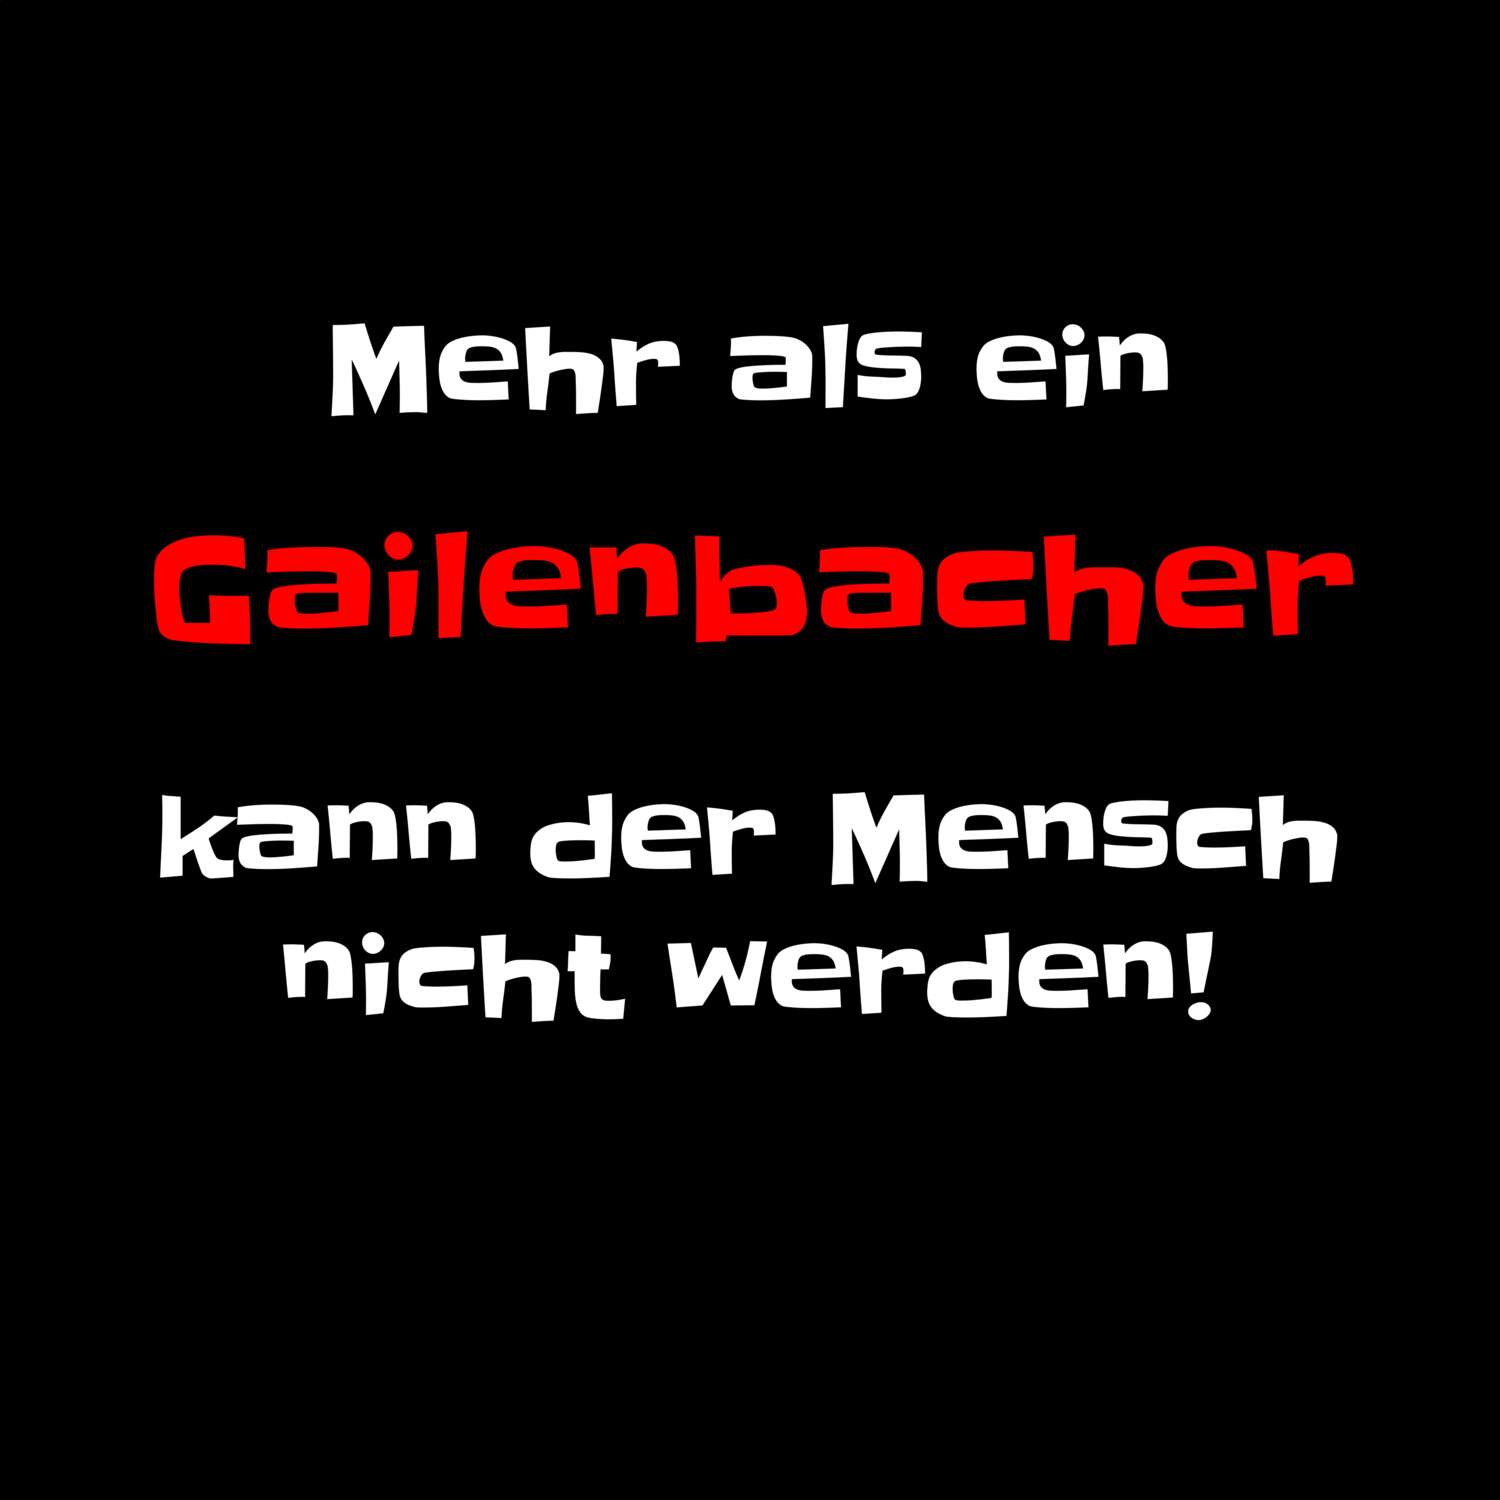 Gailenbach T-Shirt »Mehr als ein«